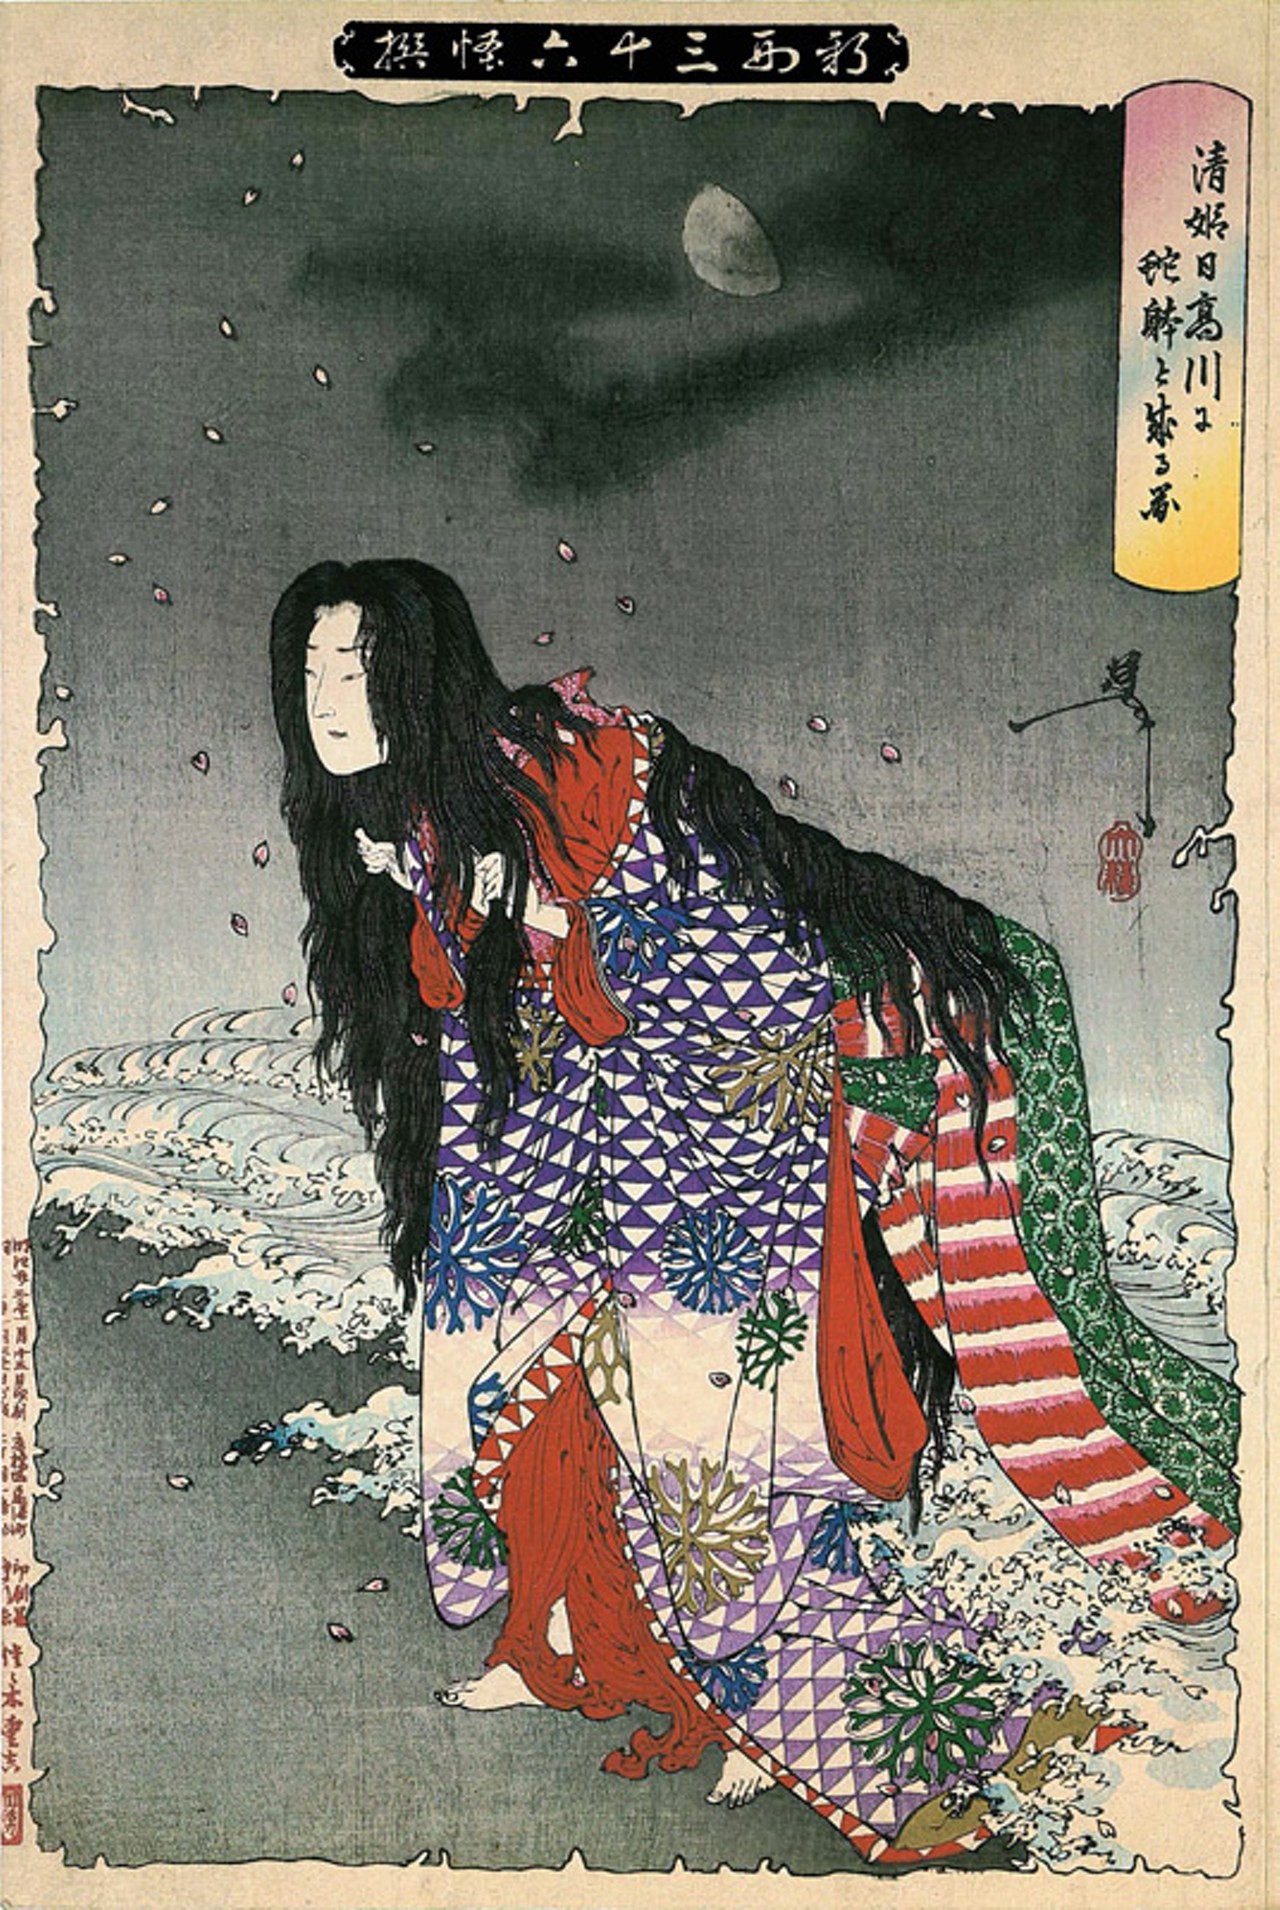 Tsukioka Yoshitoshi - 30 April 1839 - 9 June 1892